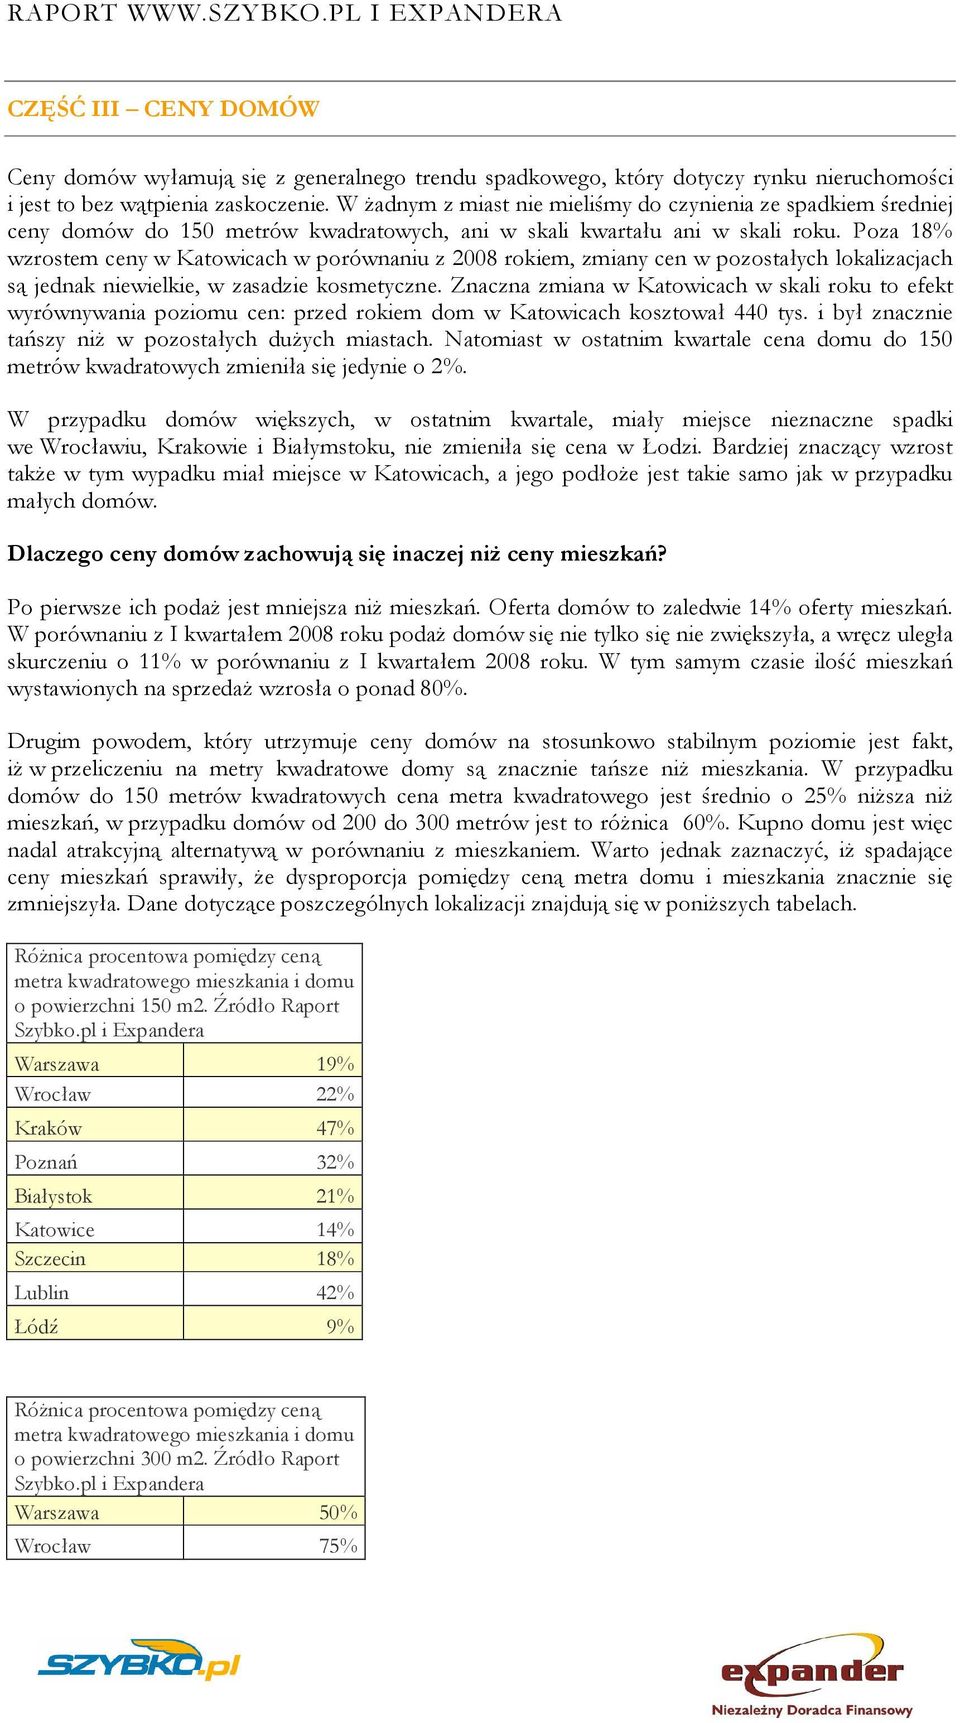 Poza 18% wzrostem ceny w Katowicach w porównaniu z 2008 rokiem, zmiany cen w pozostałych lokalizacjach są jednak niewielkie, w zasadzie kosmetyczne.